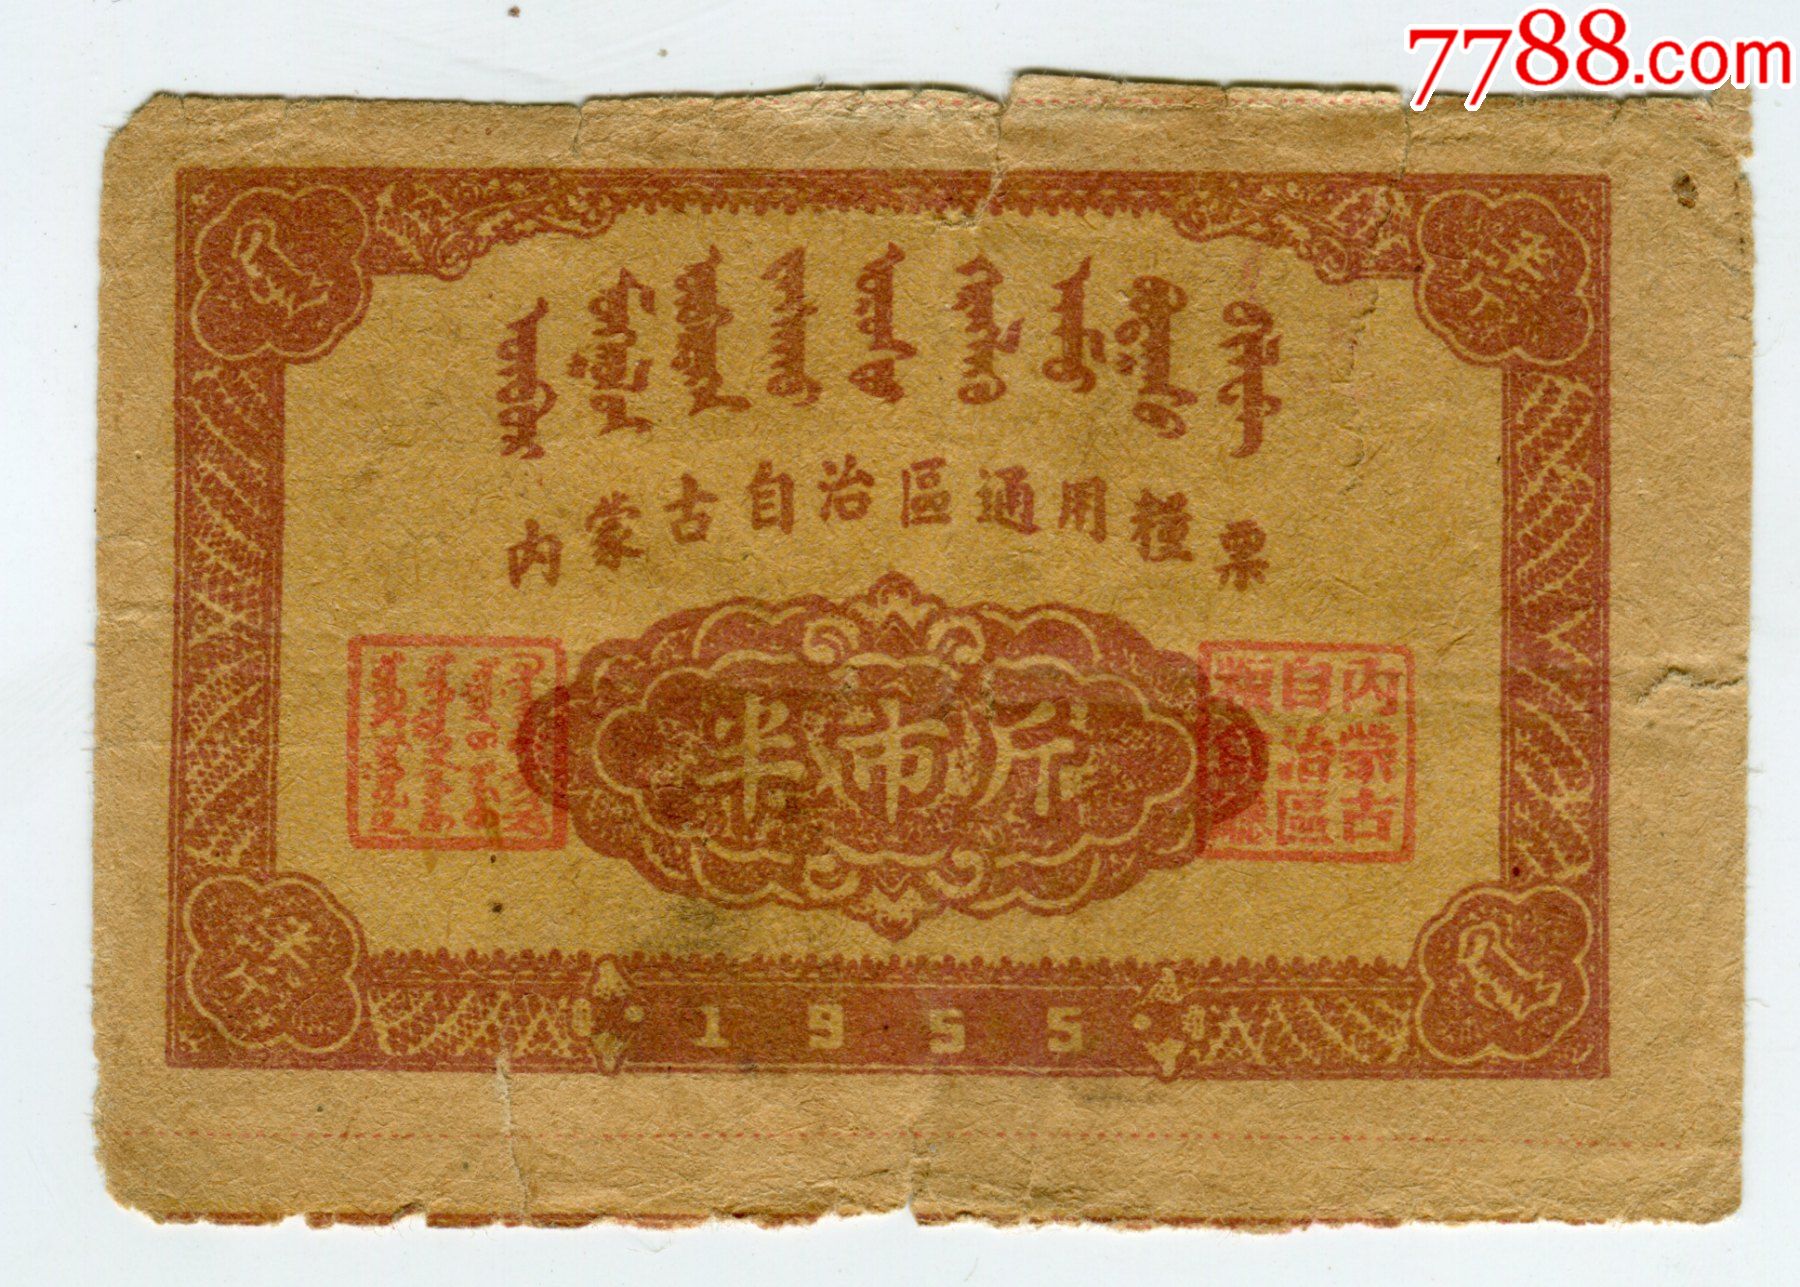 1955年内蒙古粮票半斤